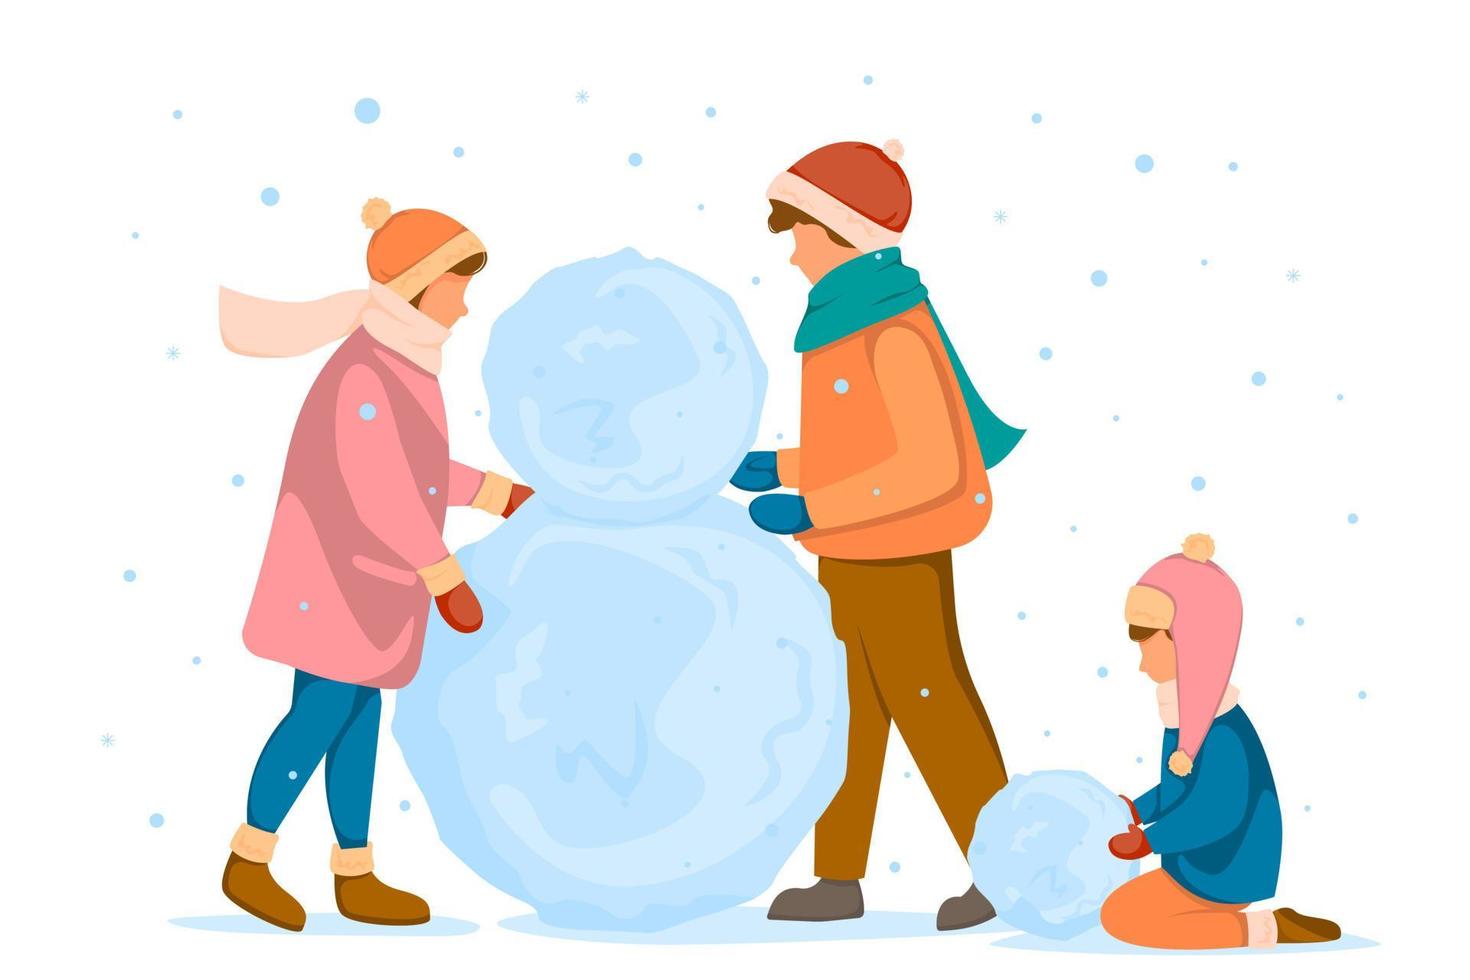 människor med barn skulpterar en snögubbe, stora snöbollar. begreppet vinterkul. vektor illustration i platt stil.